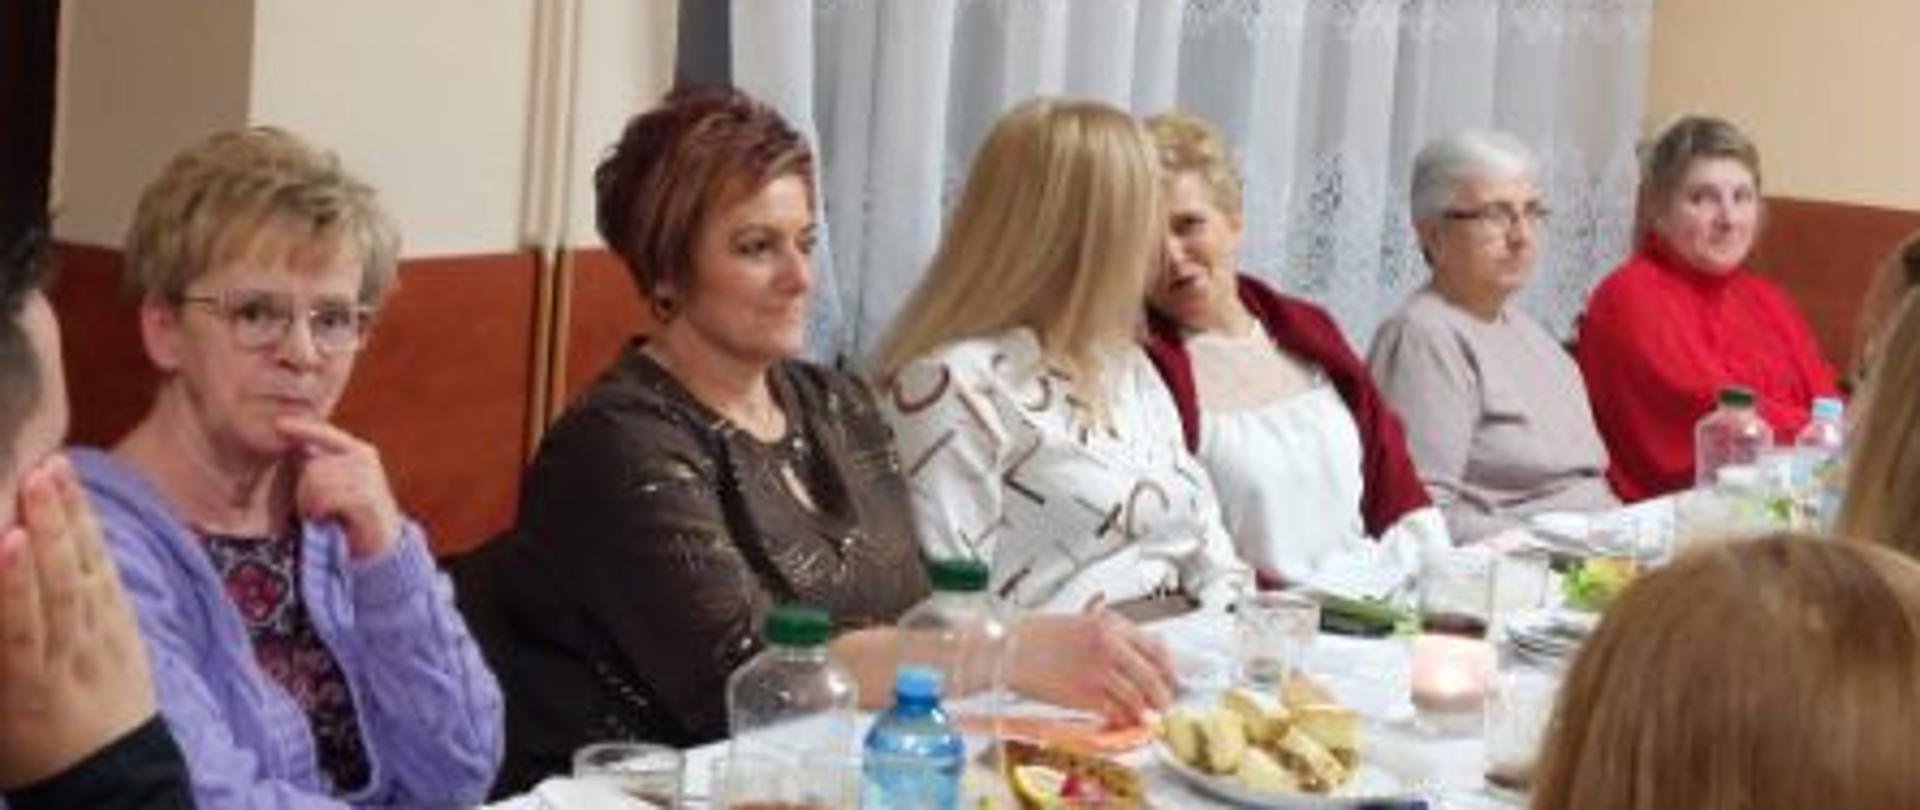 6 kobiet siedzących przy stole z białym obrusem. Na stole stoją napoje i jedzenie.